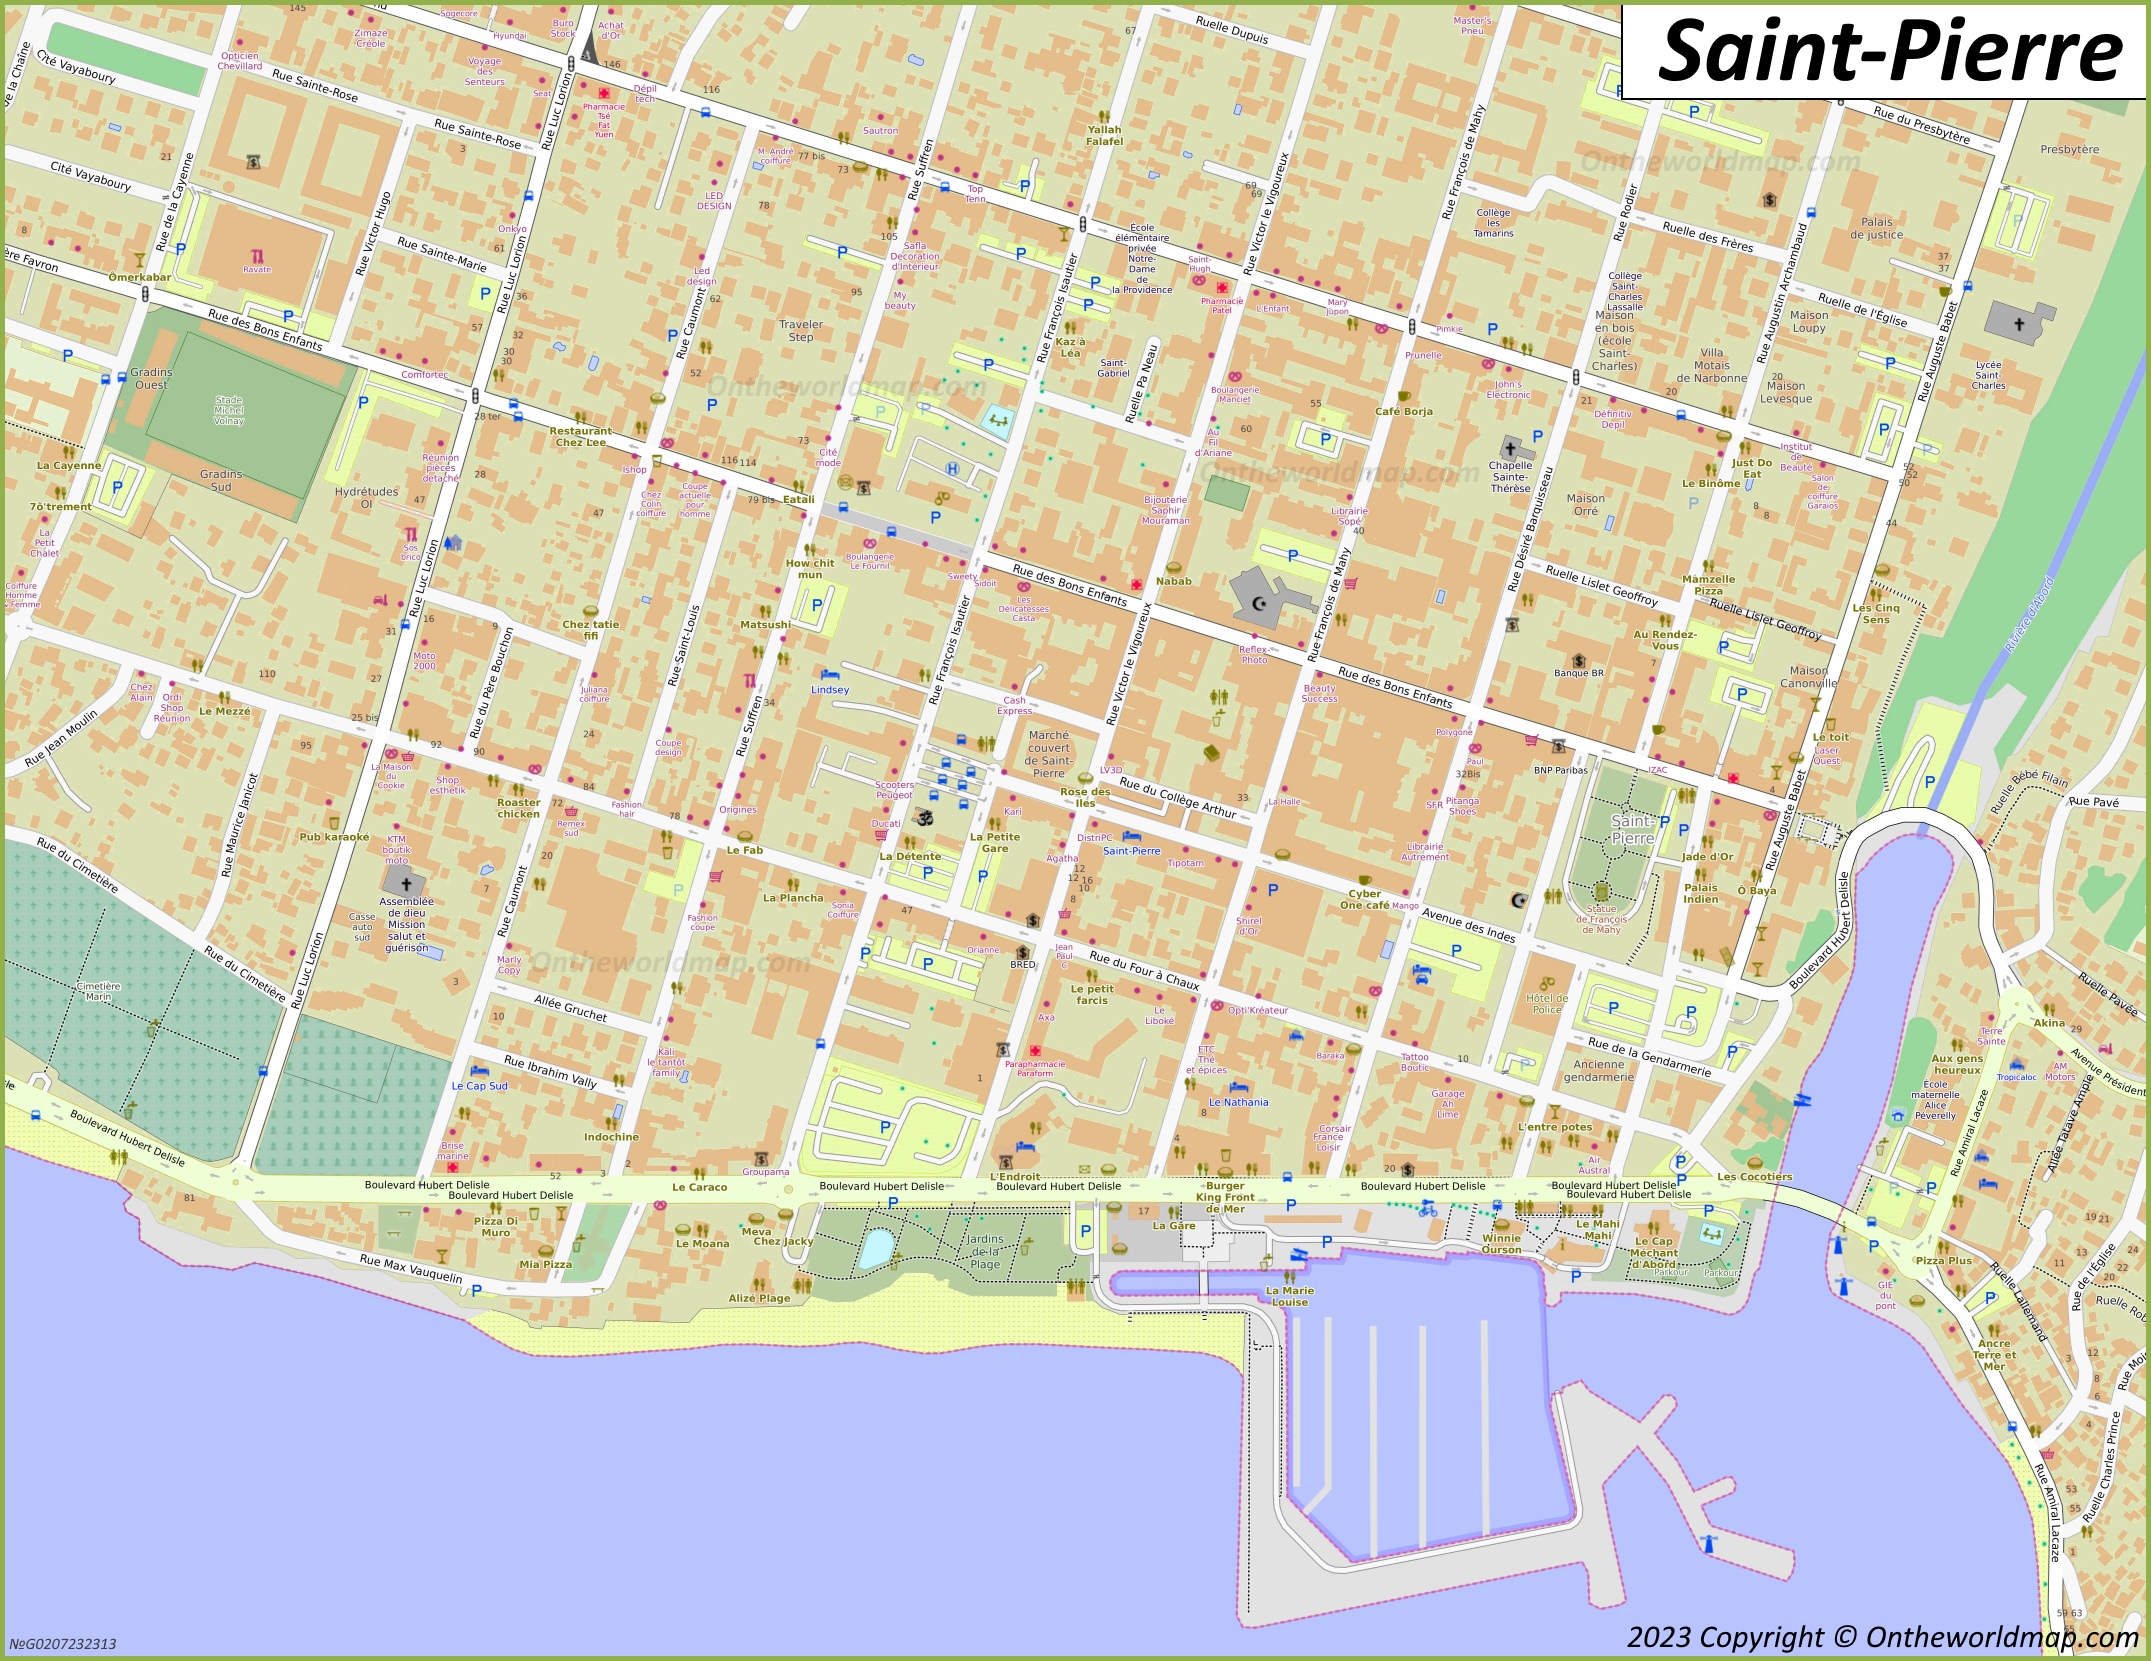 Saint-Pierre City Centre Map